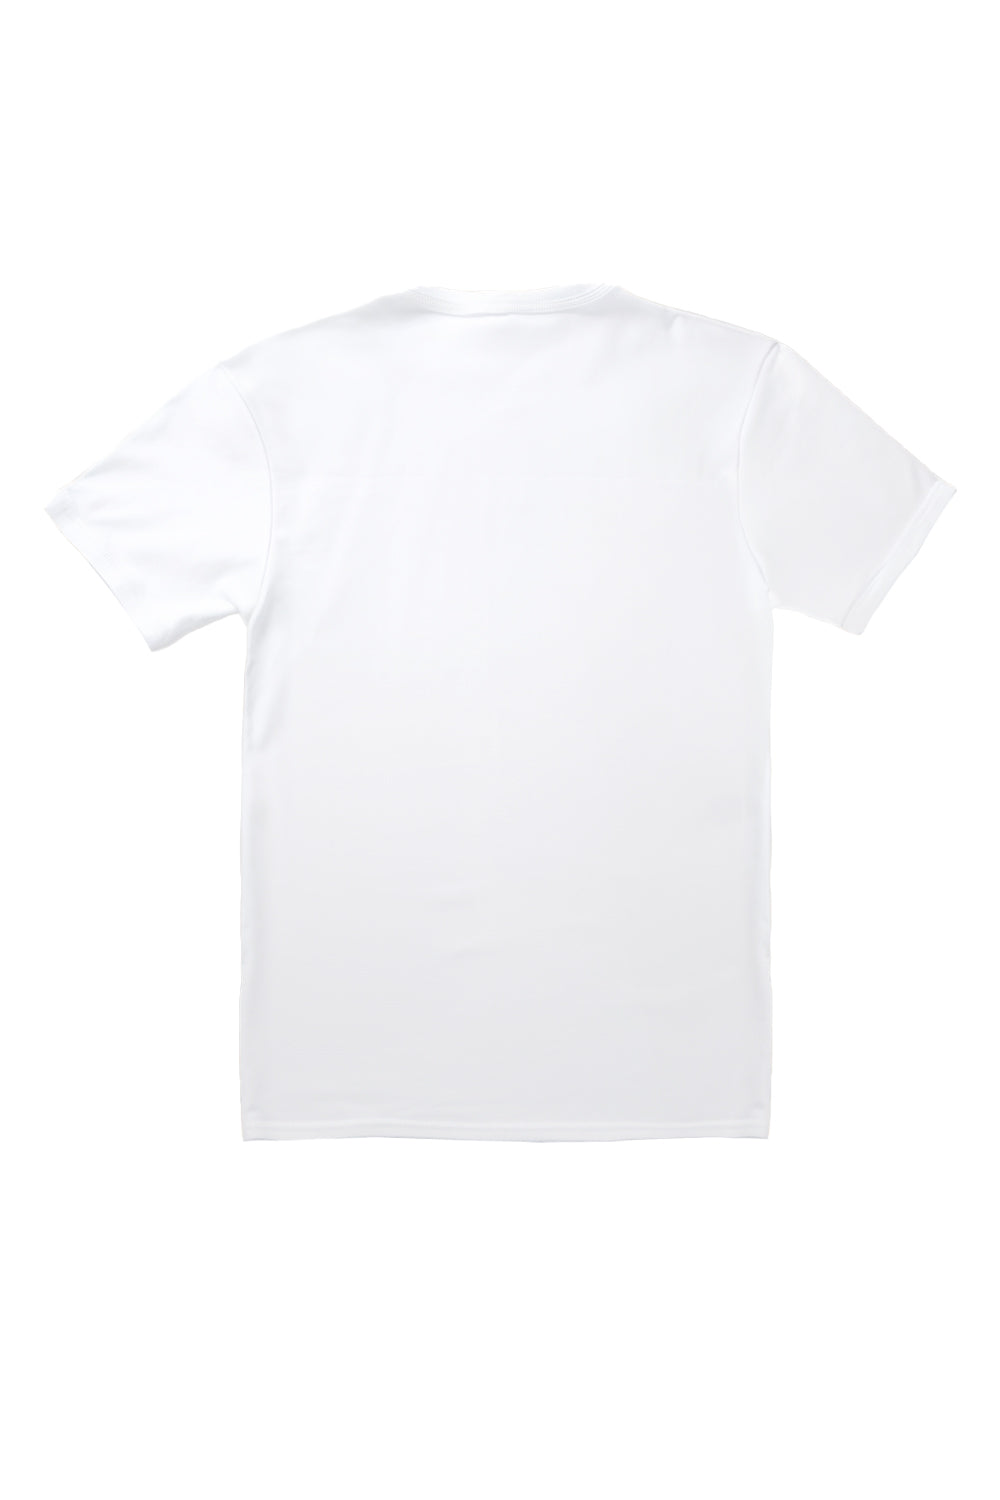 Happy Soul T-Shirt in White (Custom Packs)